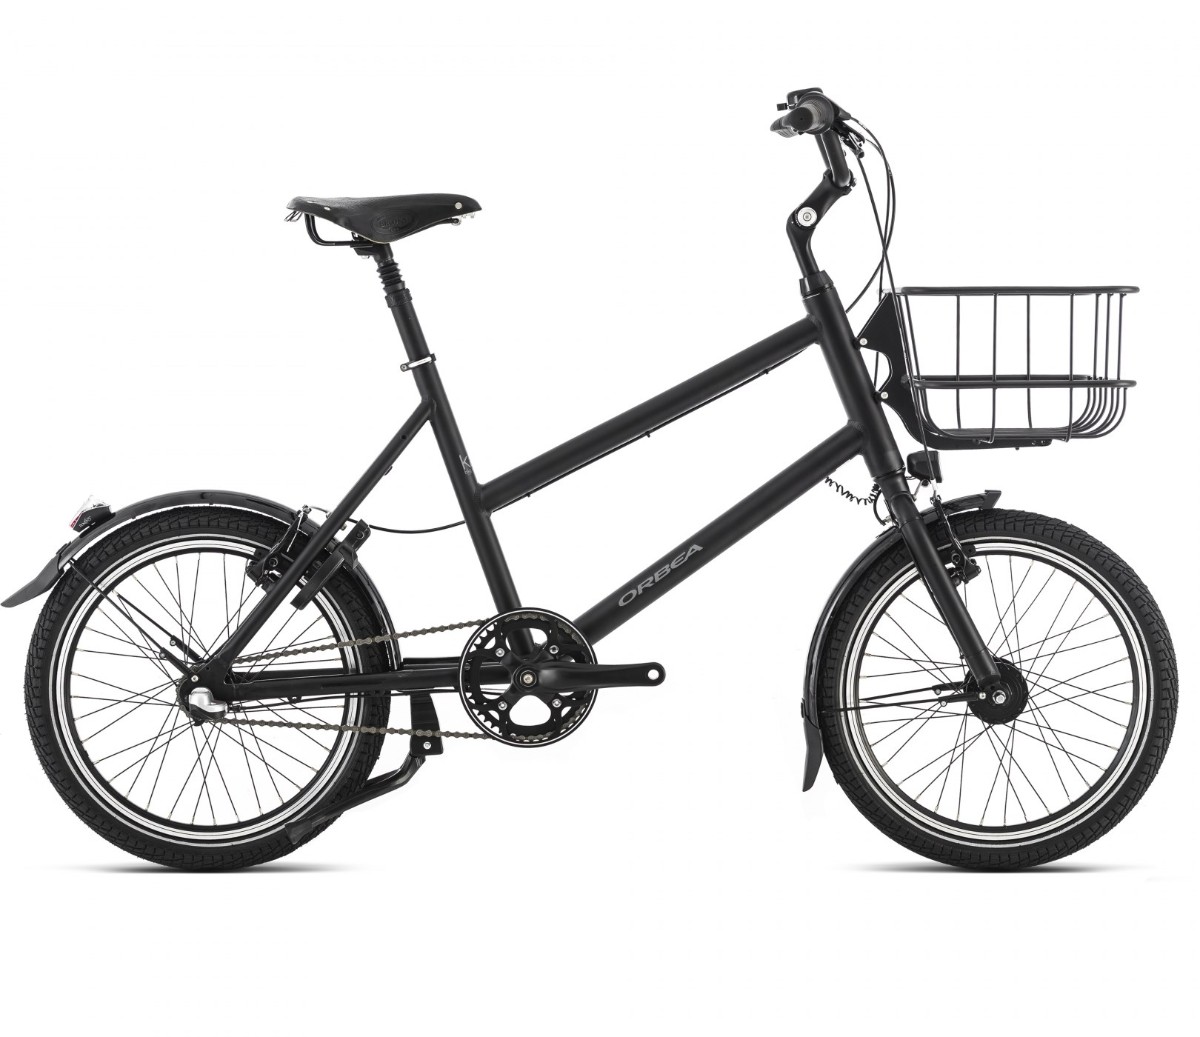 Orbea Katu 10 2016 Hybrid Bike